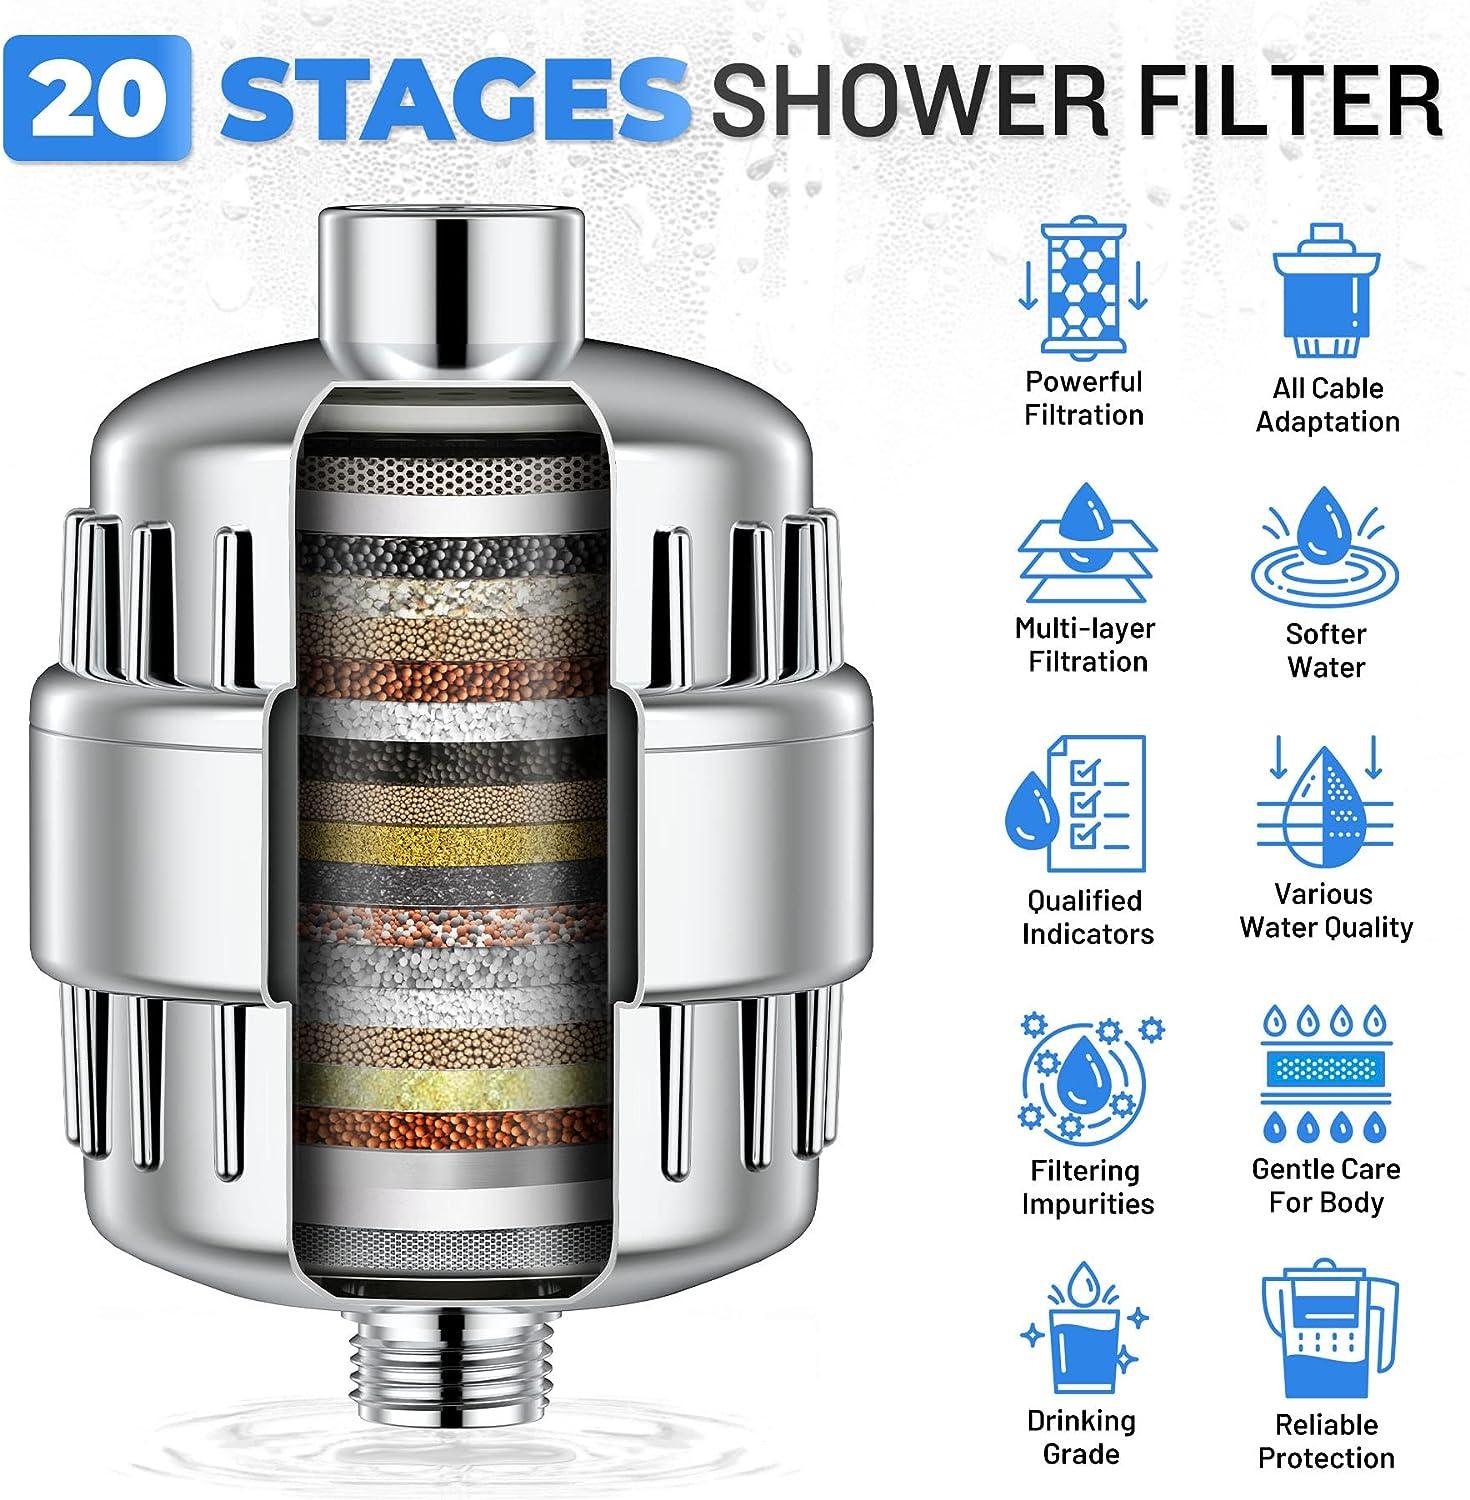 Filtro de cabezal de ducha de 20 etapas, filtro para agua dura